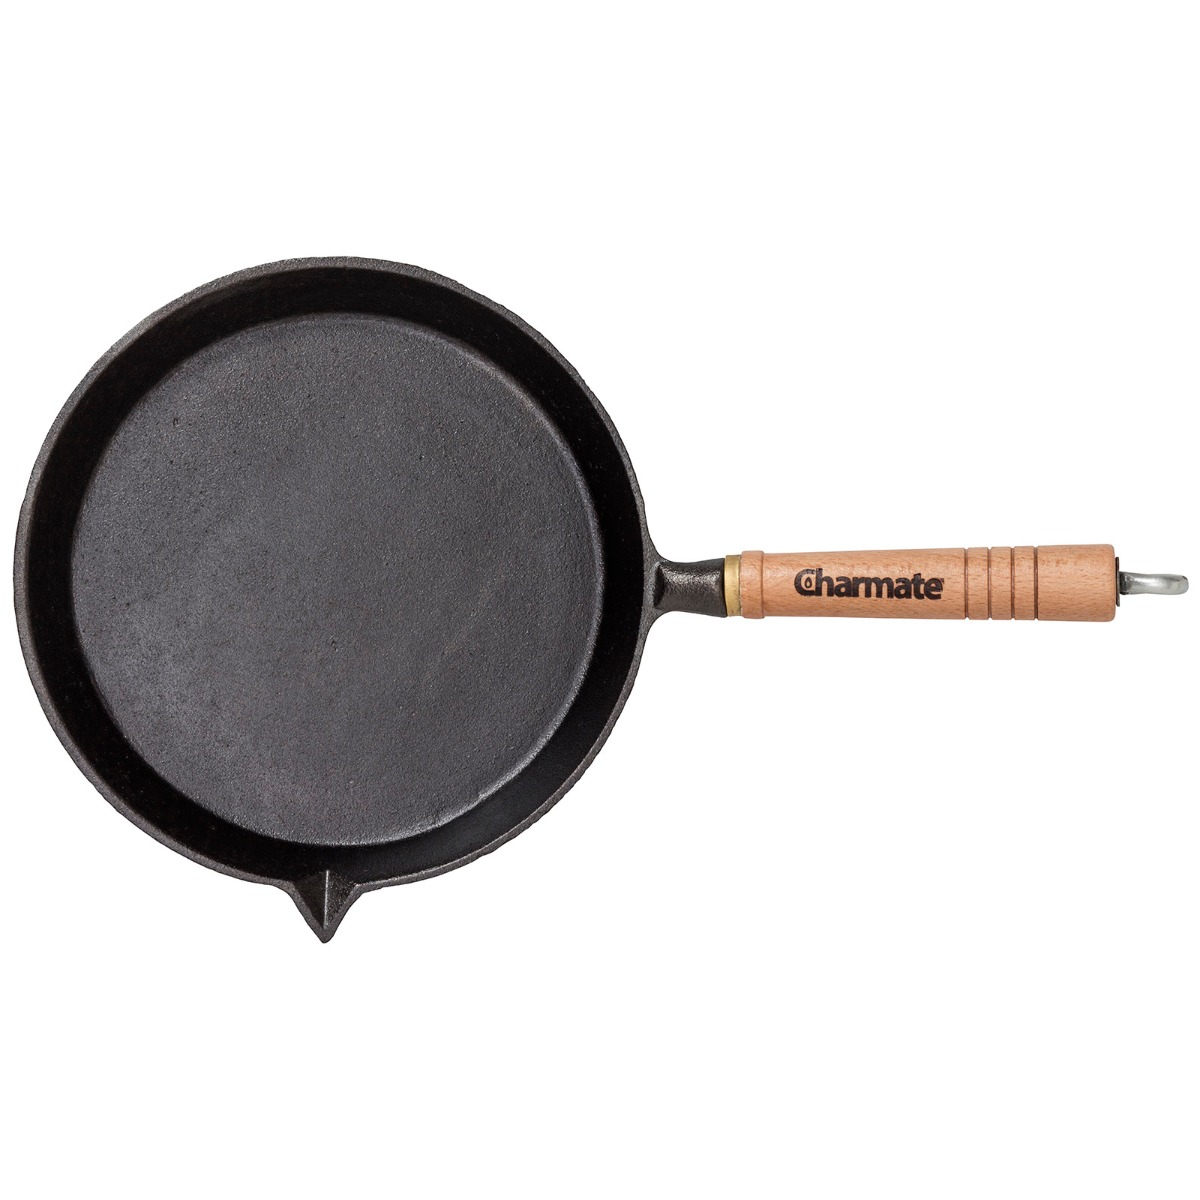 24cm Round Frying Pan